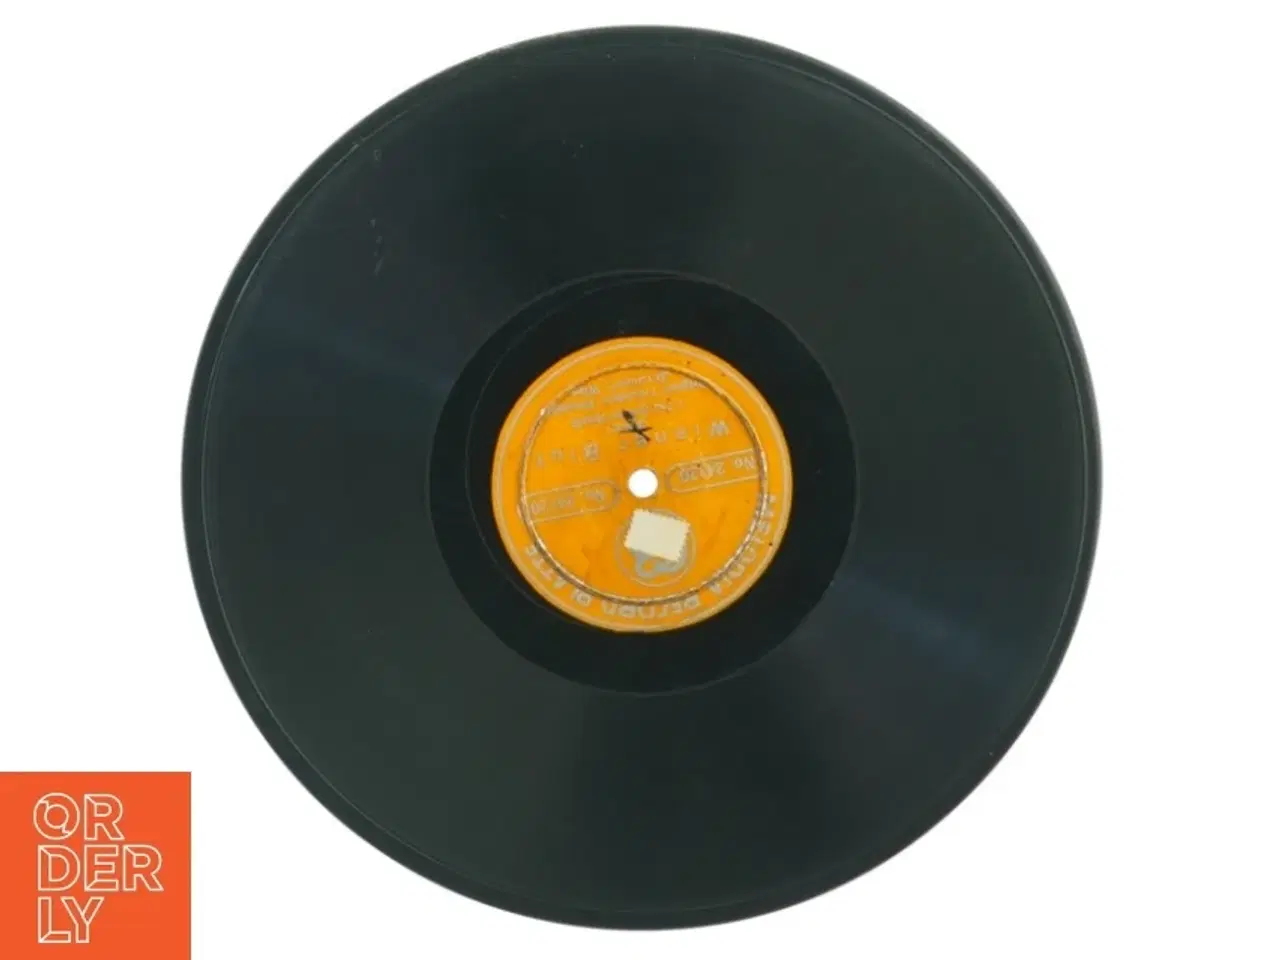 Billede 2 - Wiener blut lp fra Melodia Record Platte (str. 25 cm)